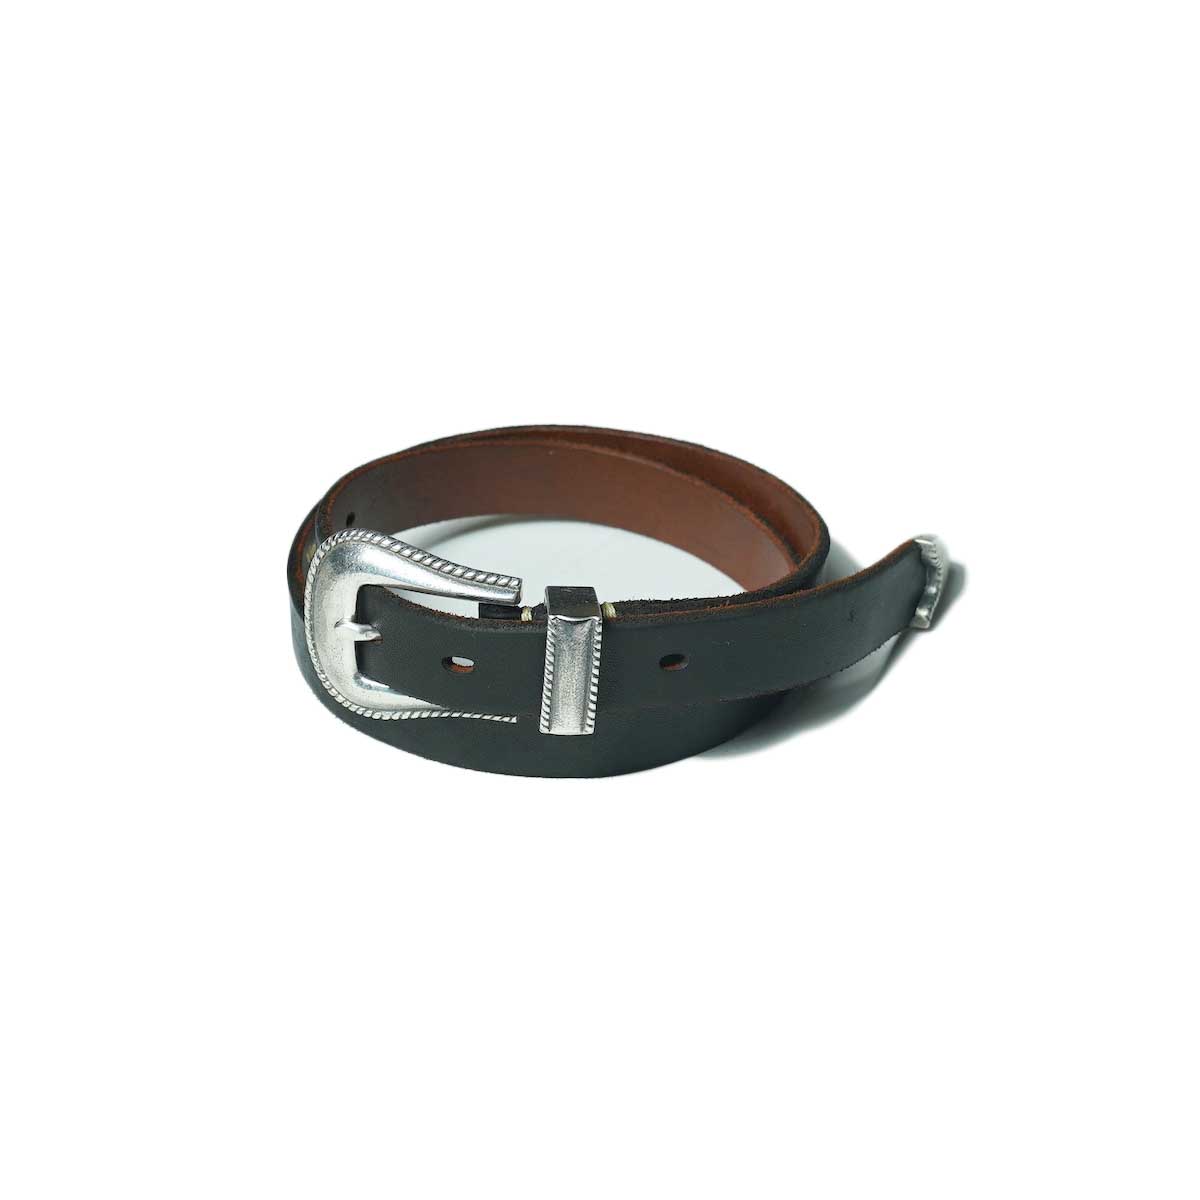 Vintage Works / DH5738 Leather Belt -CHASIN